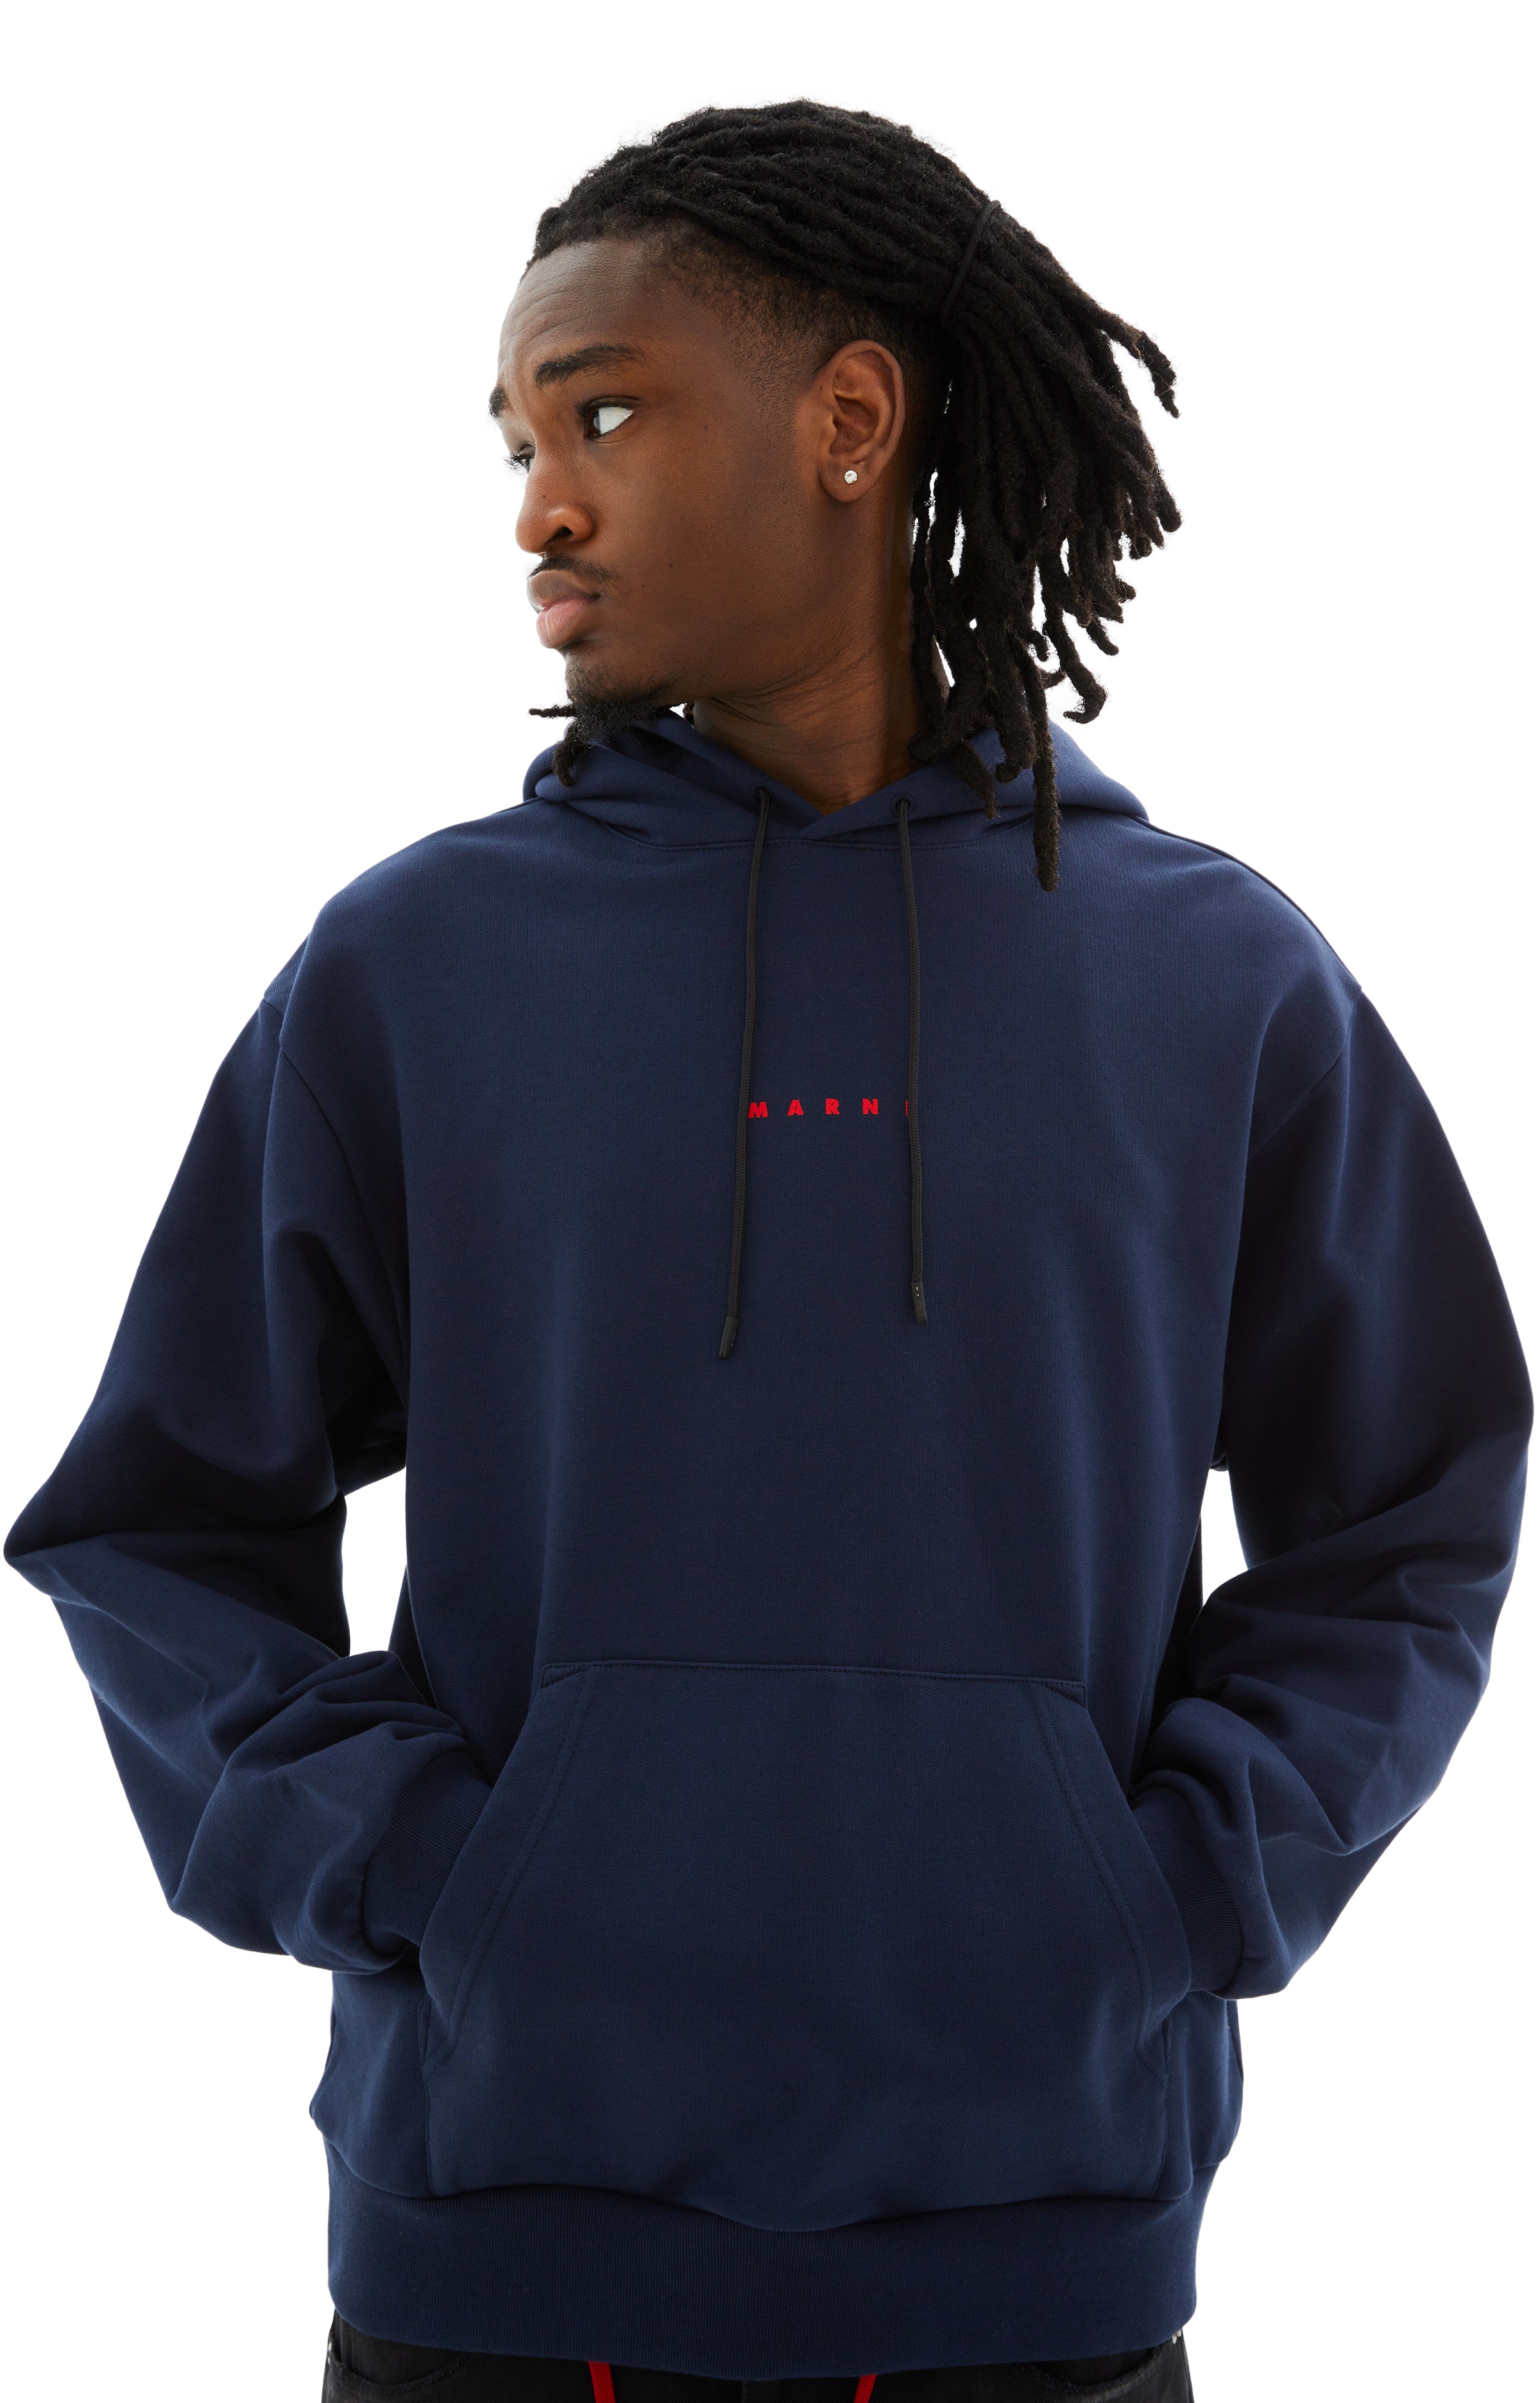 Shop Marni Long Sleeved Hooded Sweatshirt In Lob95 Dark Blue